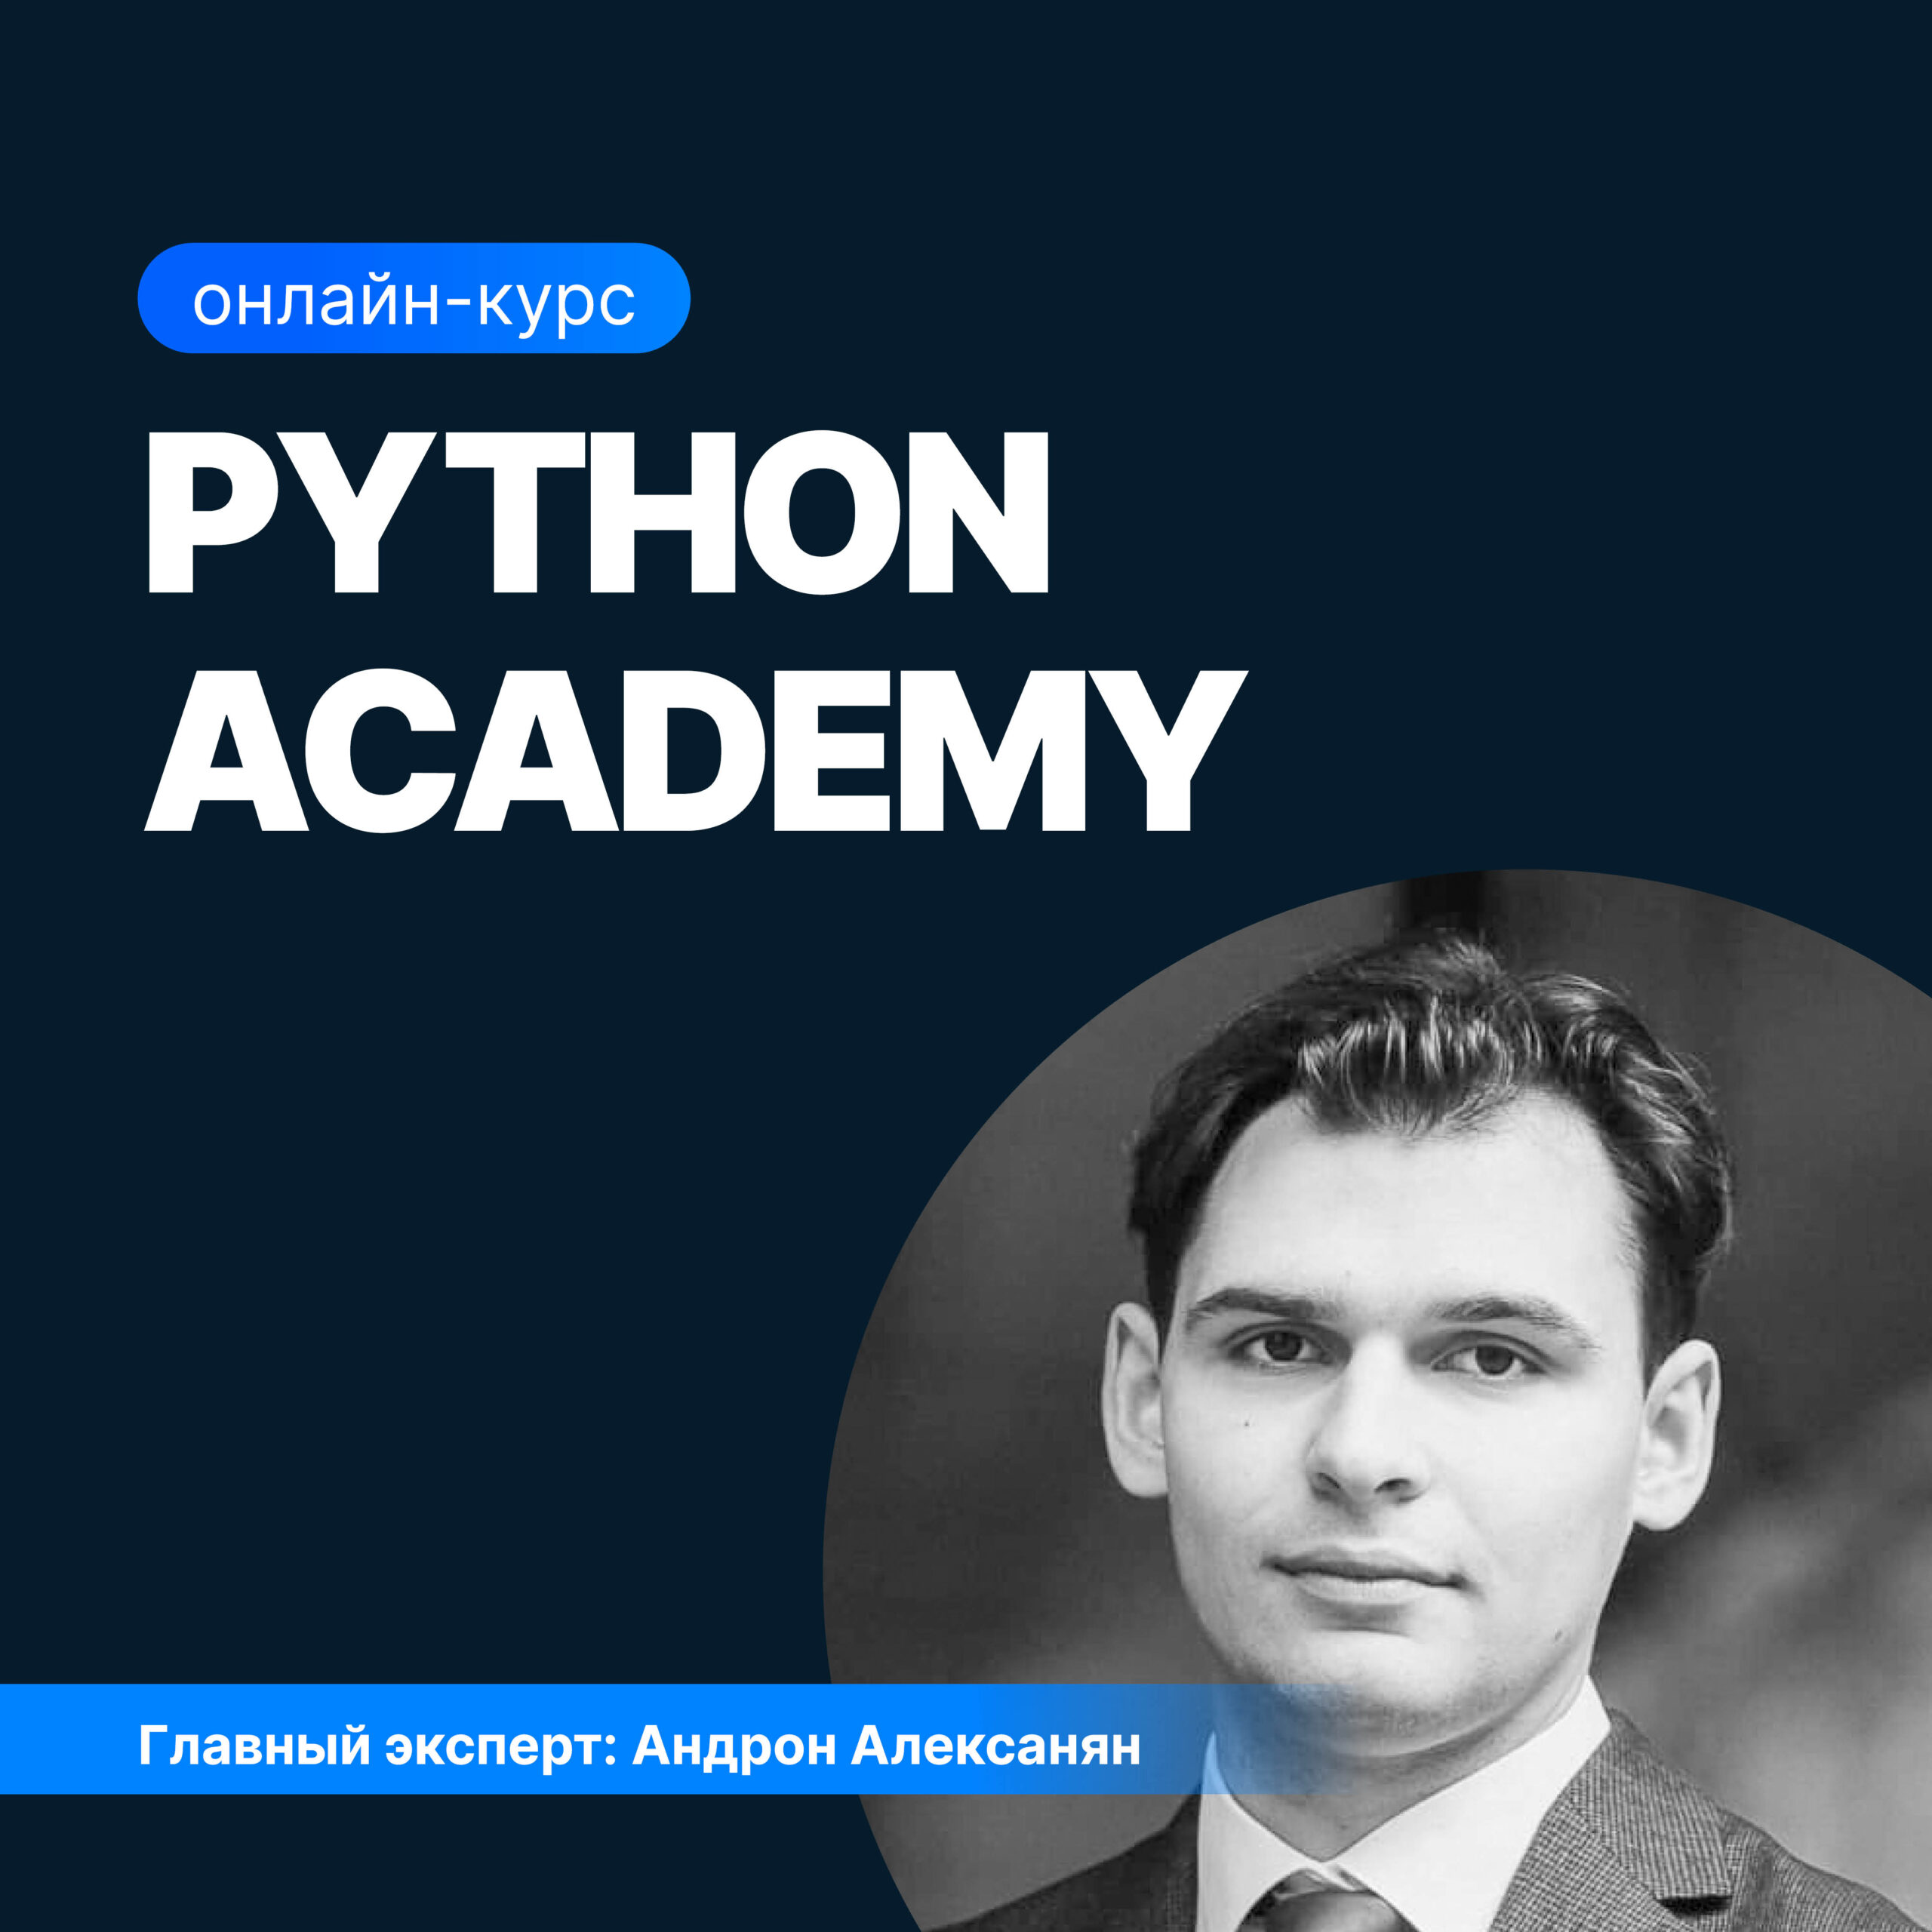 Python Academy python academy